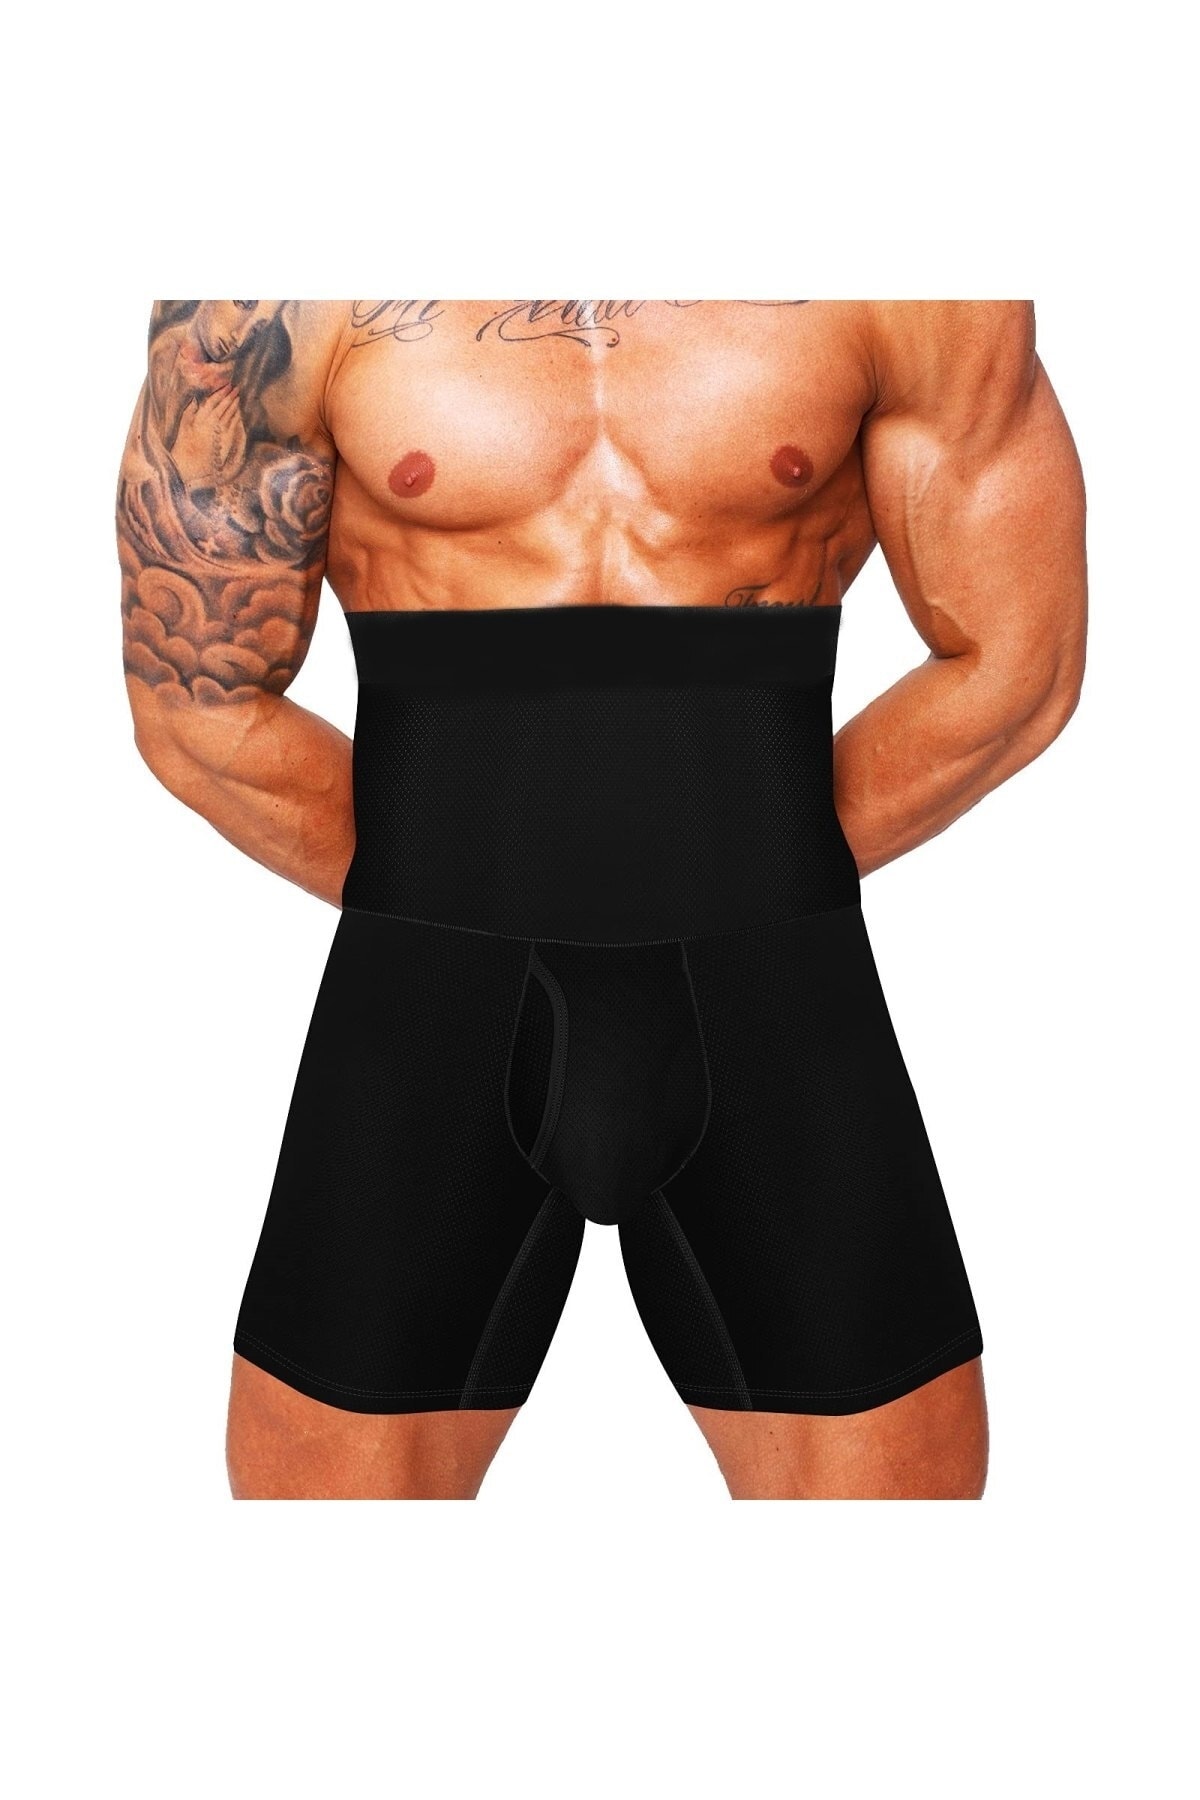 MİSTİRİK Danni Model Bel Ve Göbek Eritici Düzleştirici Spor Korse Boxer Karın Gizleyen Boxer Siyah Renk